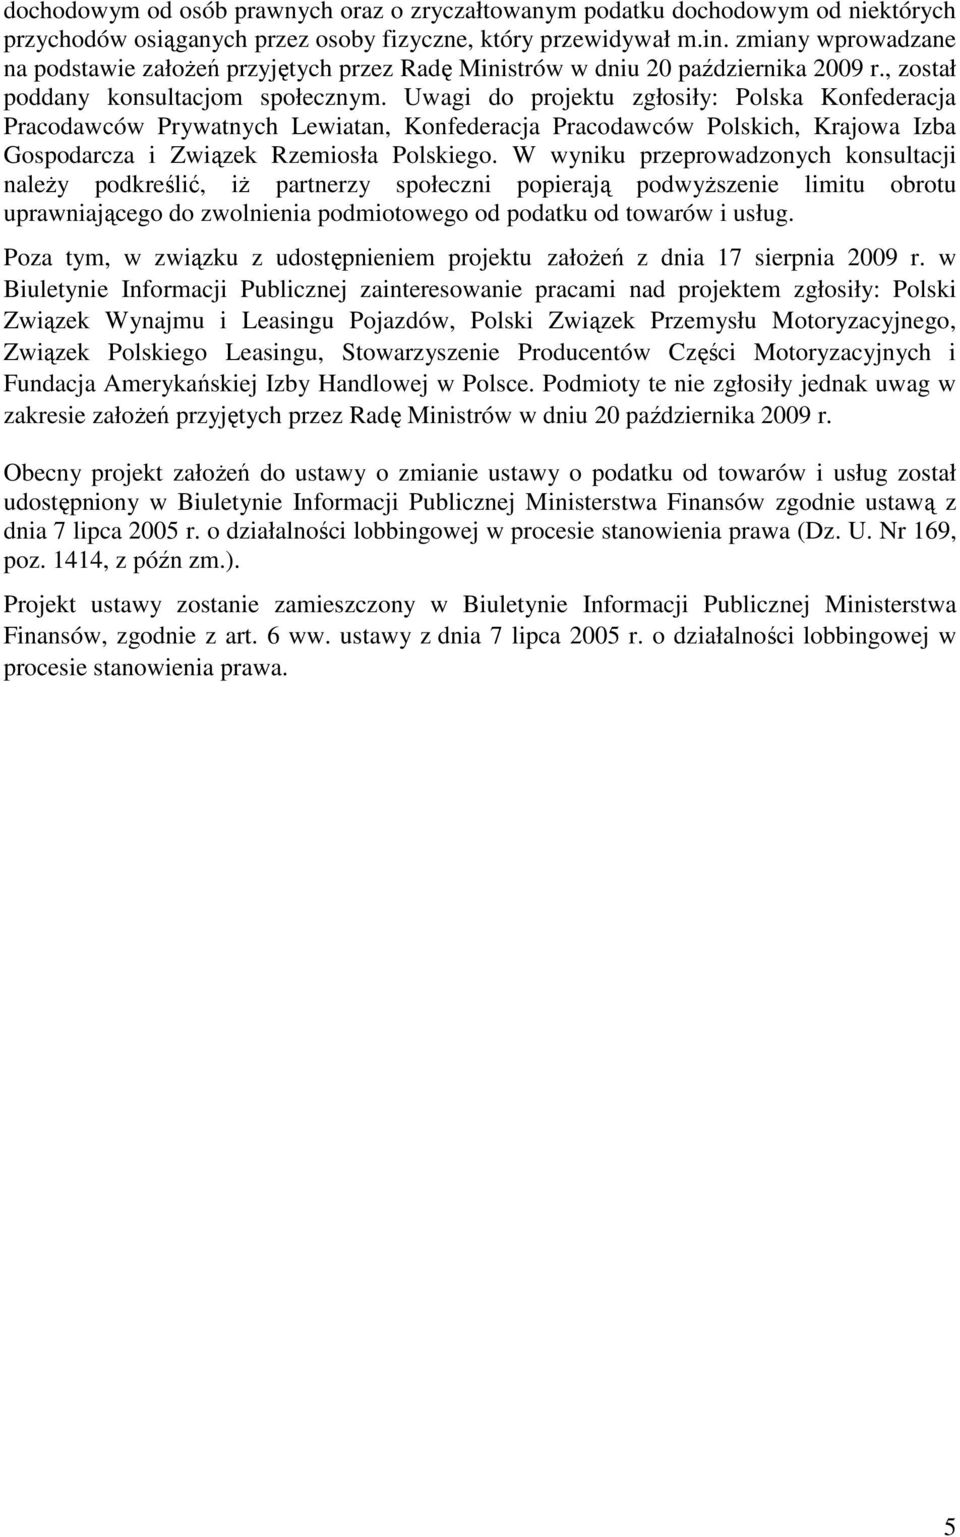 Uwagi do projektu zgłosiły: Polska Konfederacja Pracodawców Prywatnych Lewiatan, Konfederacja Pracodawców Polskich, Krajowa Izba Gospodarcza i Związek Rzemiosła Polskiego.